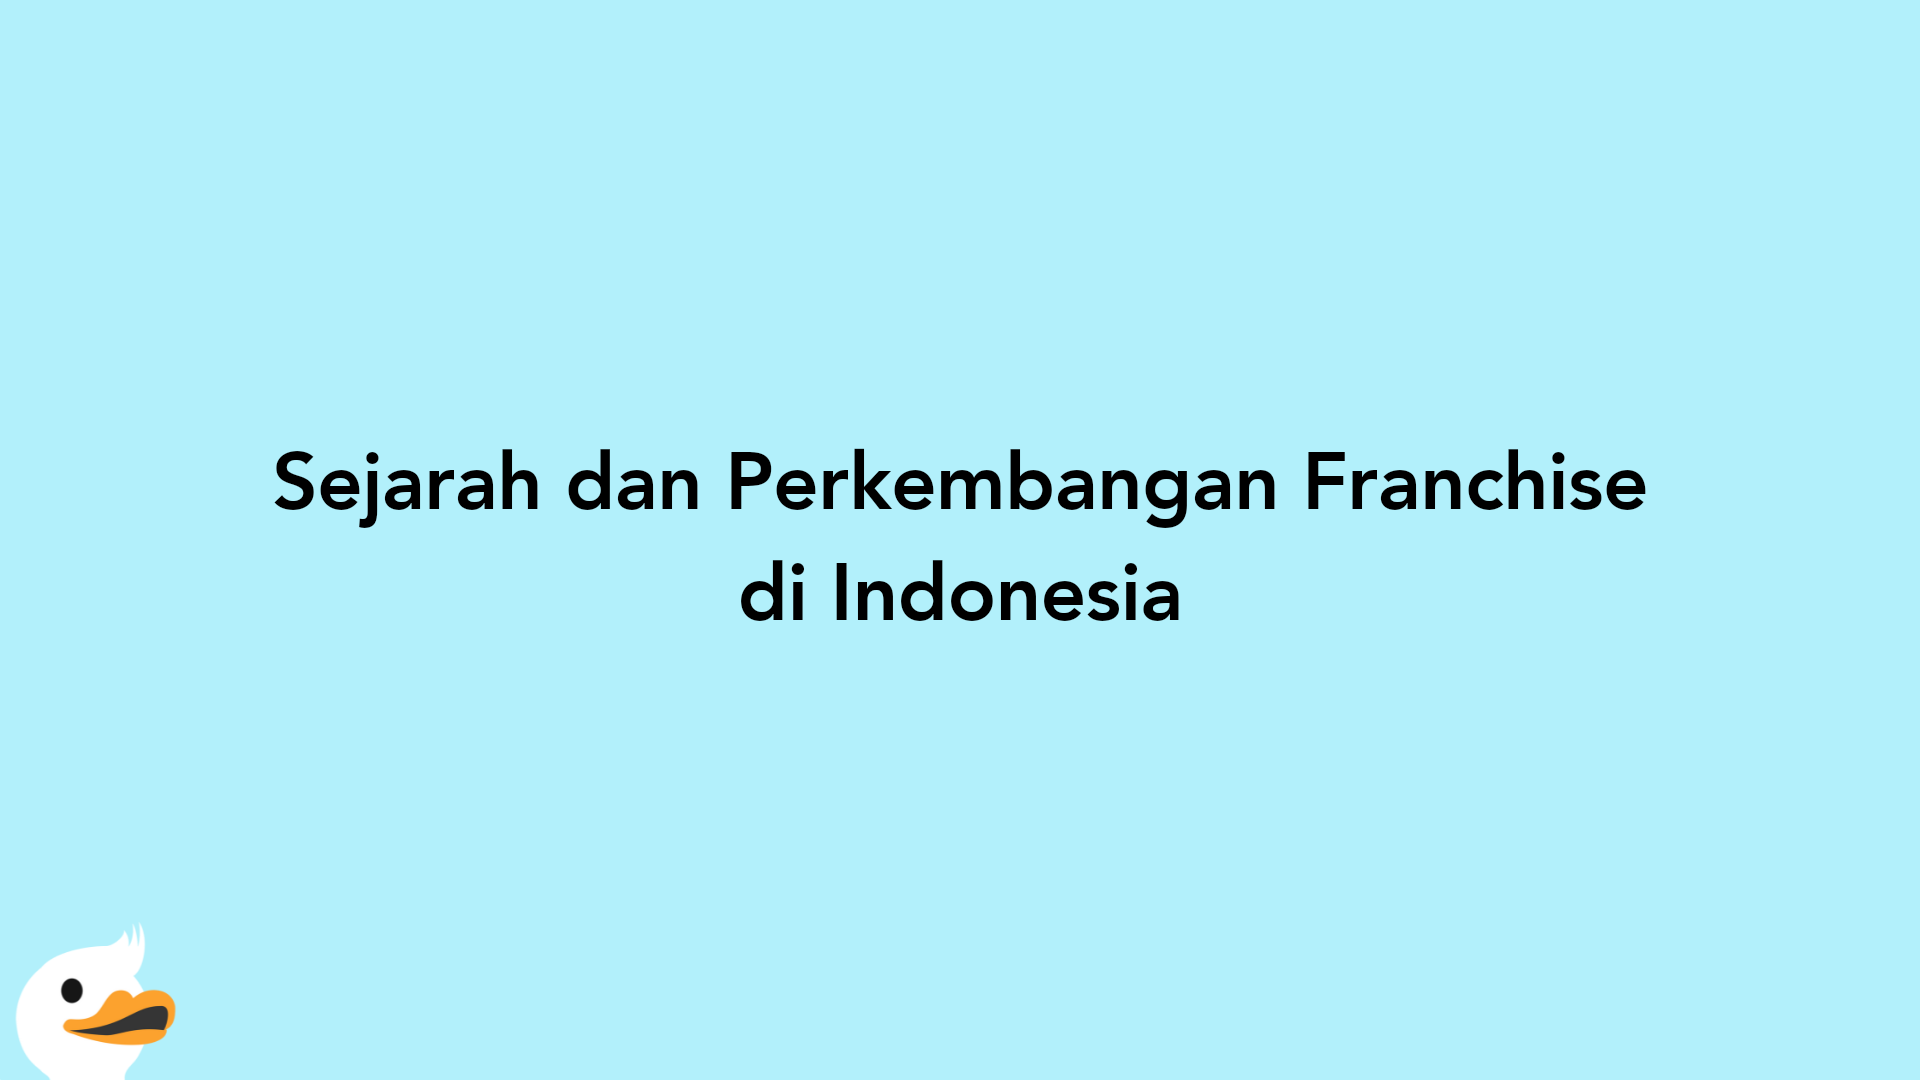 Sejarah dan Perkembangan Franchise di Indonesia